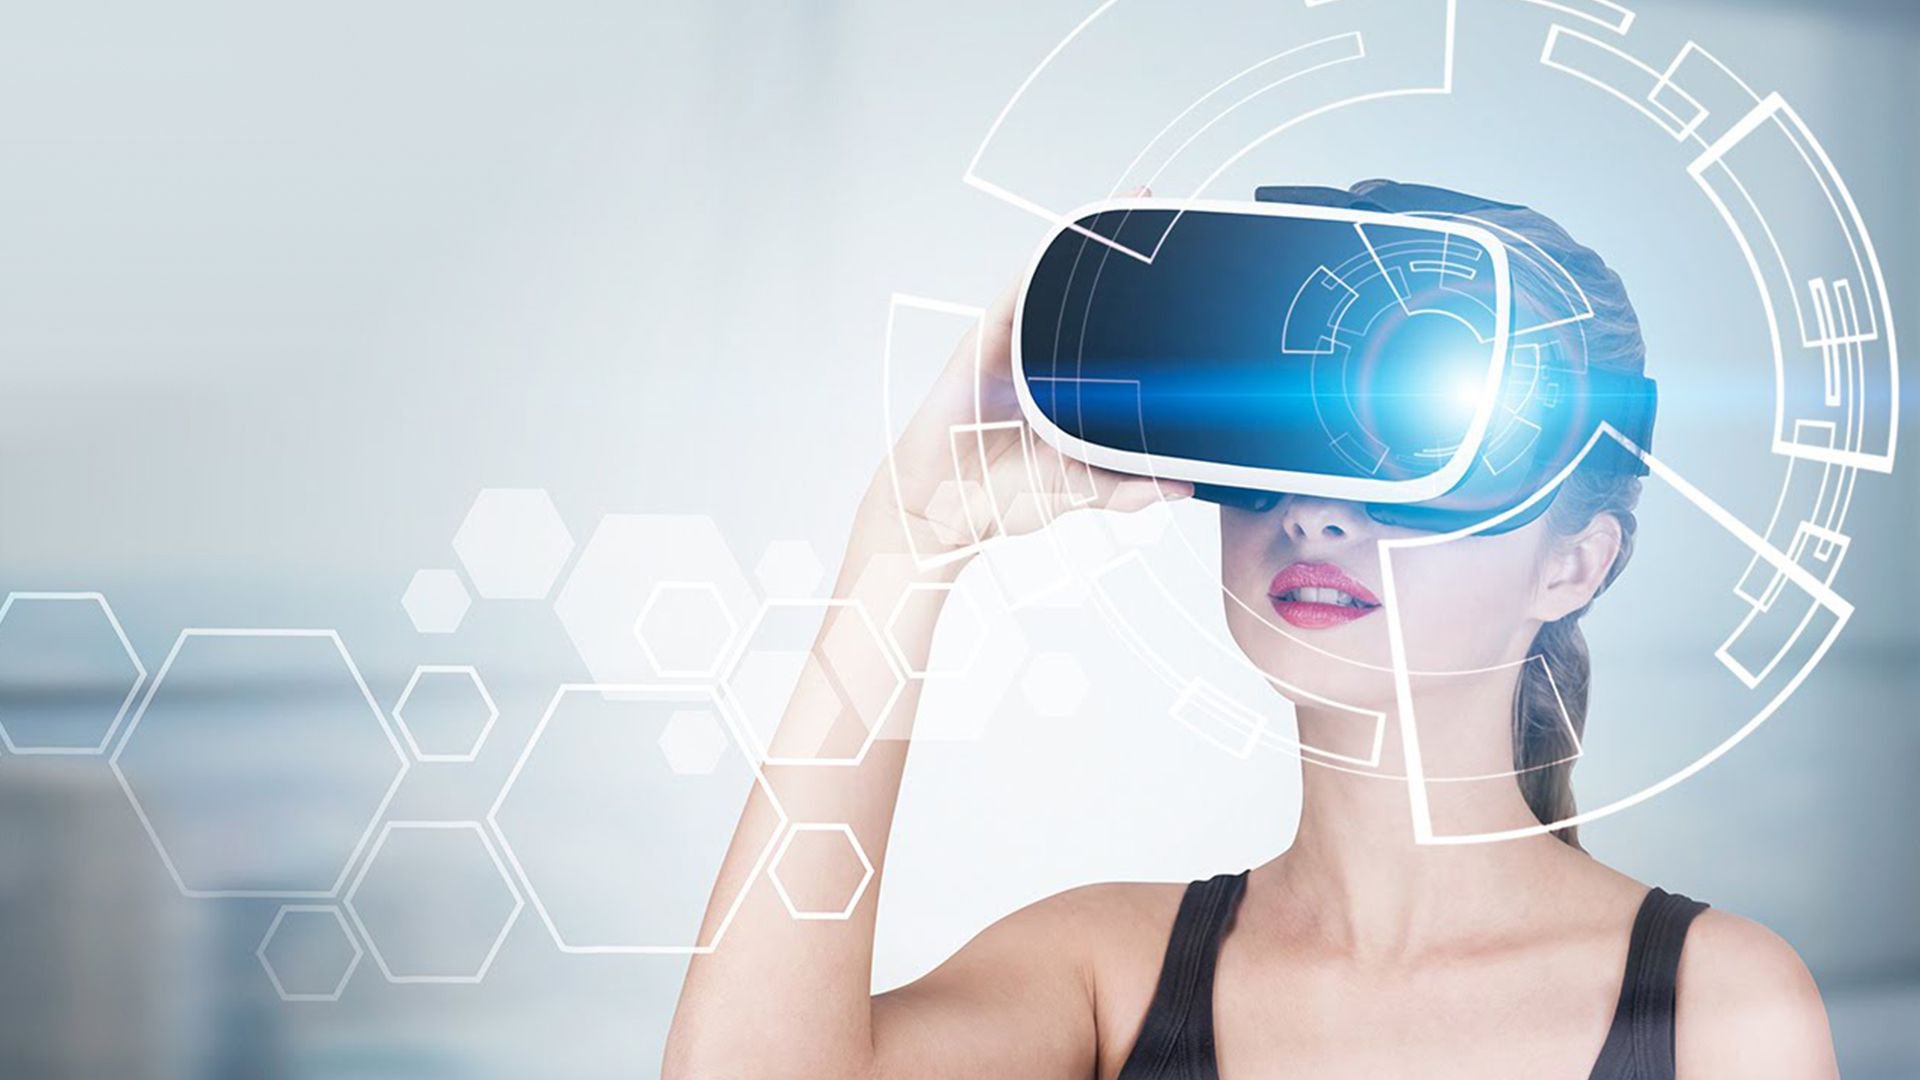 Vr презентация. Очки дополненной реальности. VR технологии. VR виртуальная реальность. Технологии будущего.